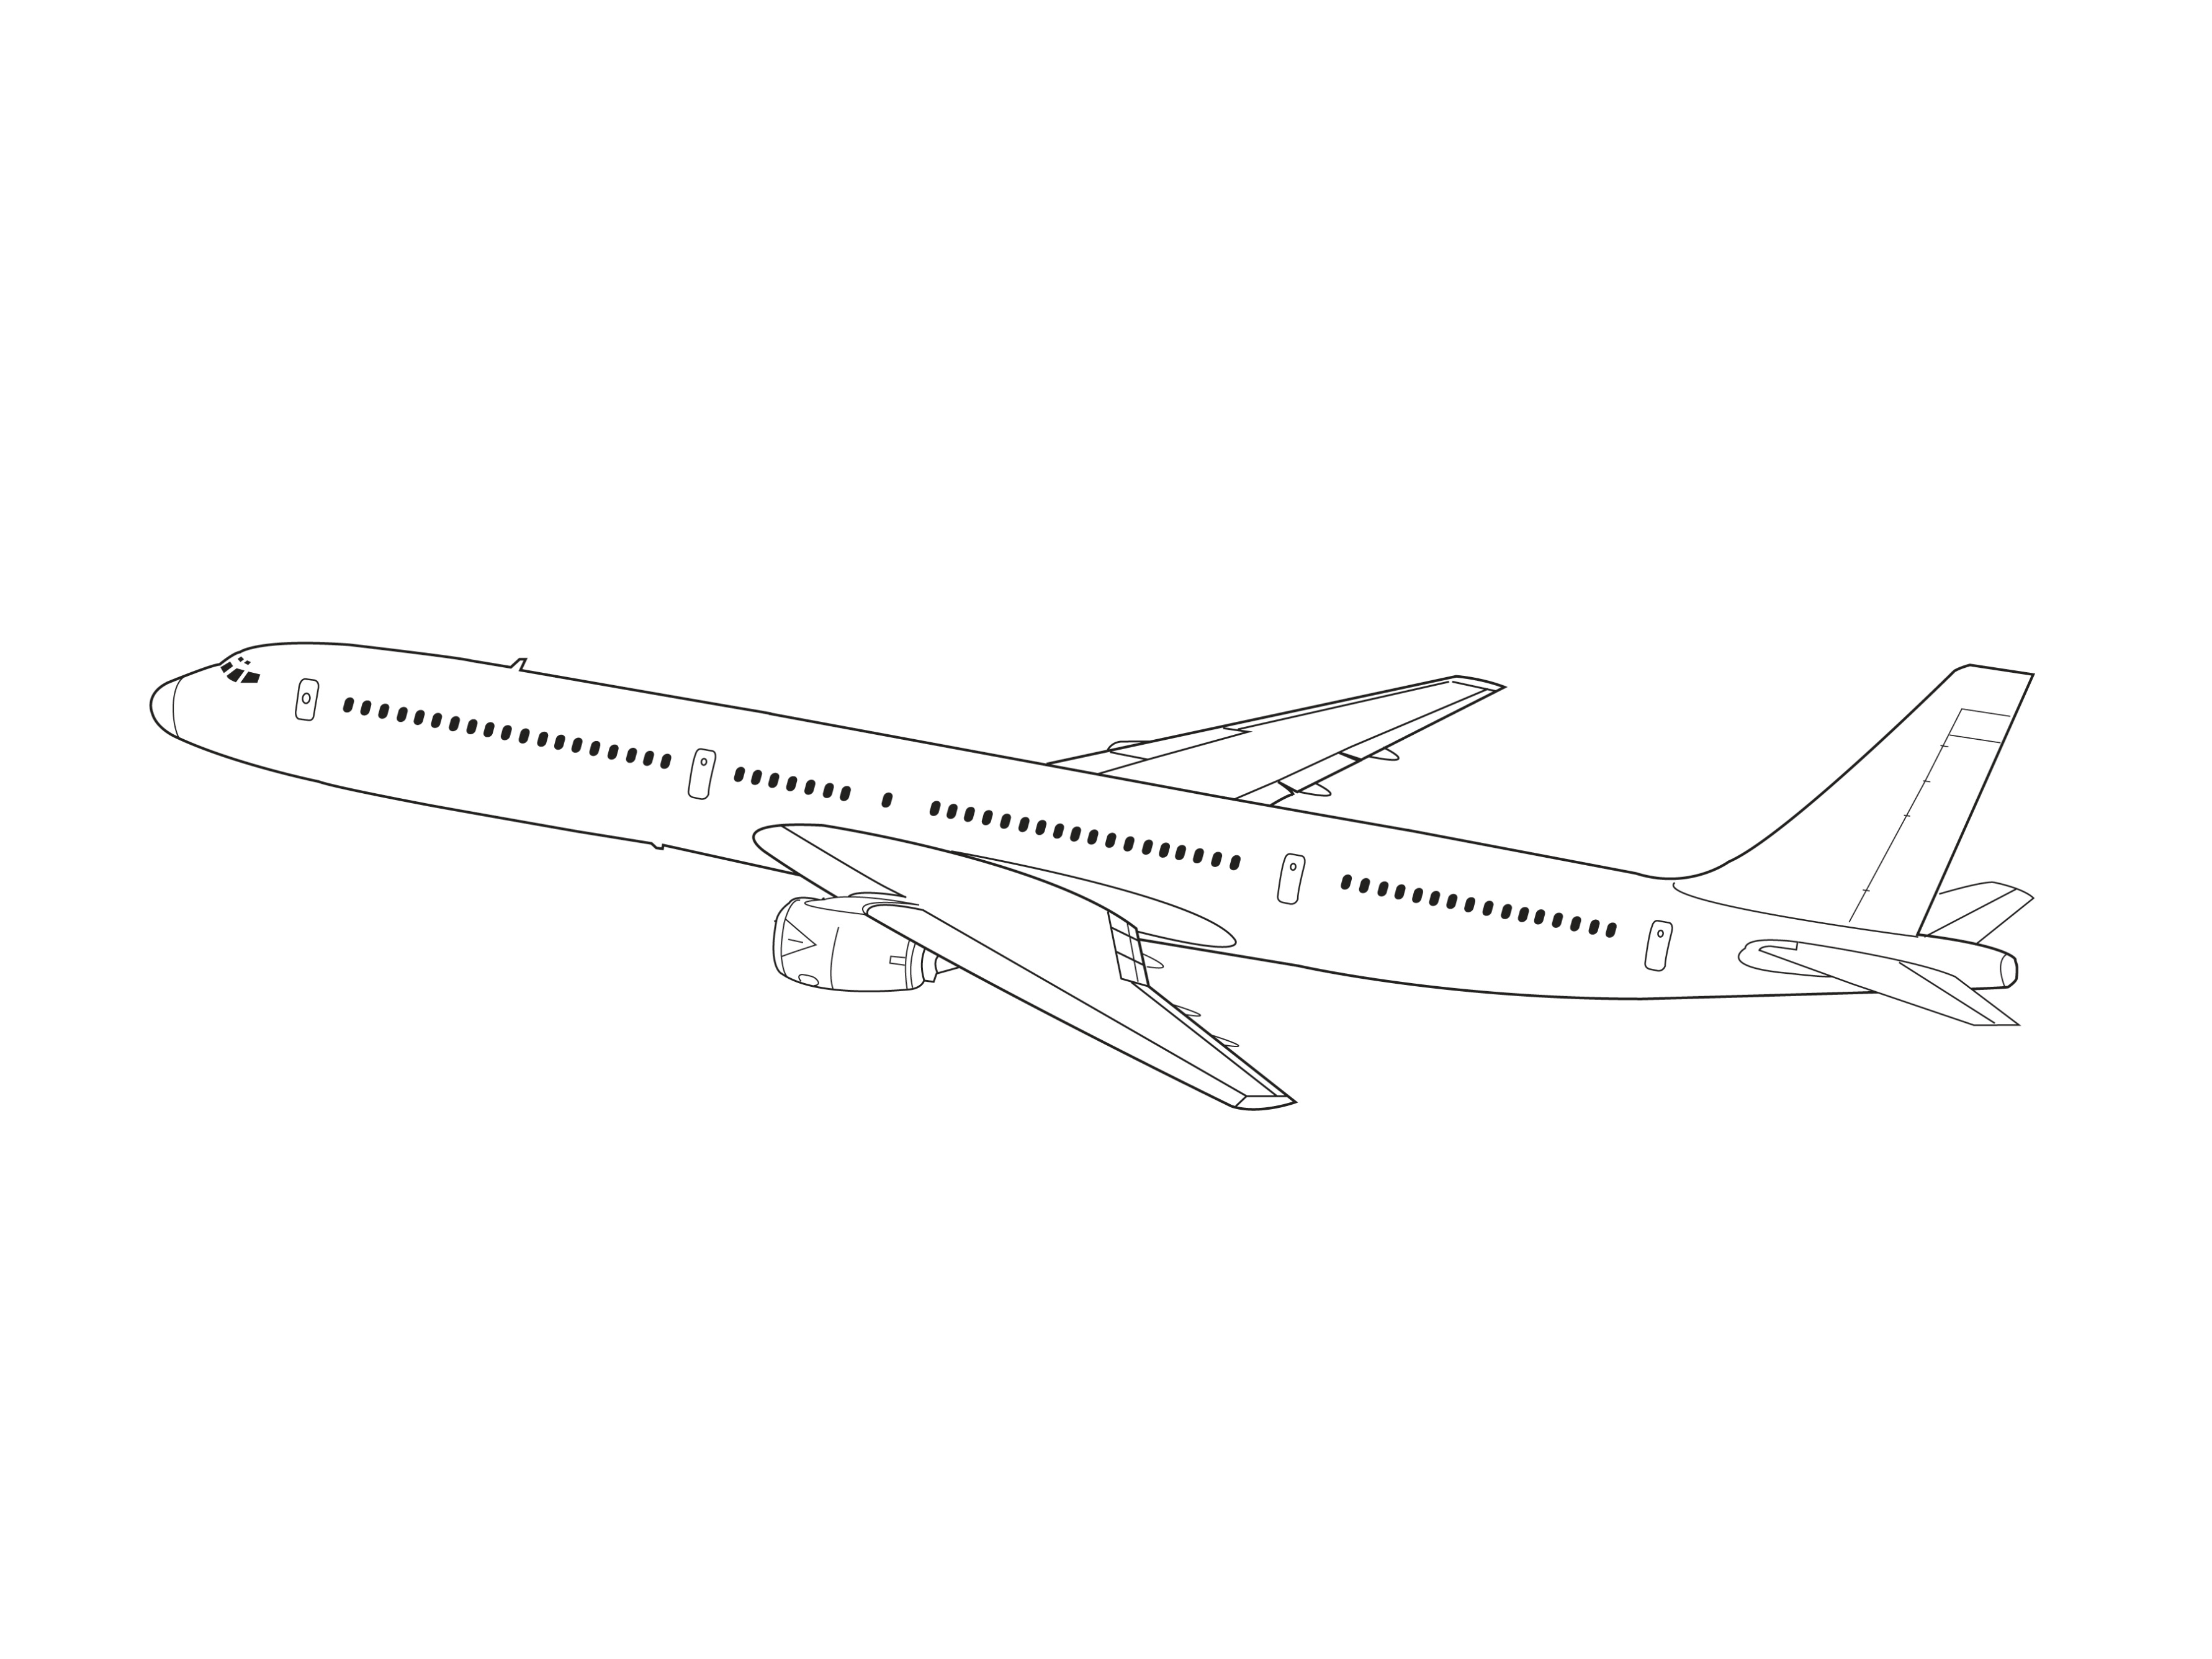 Boeing 787 Dreamliner Kleurplaat